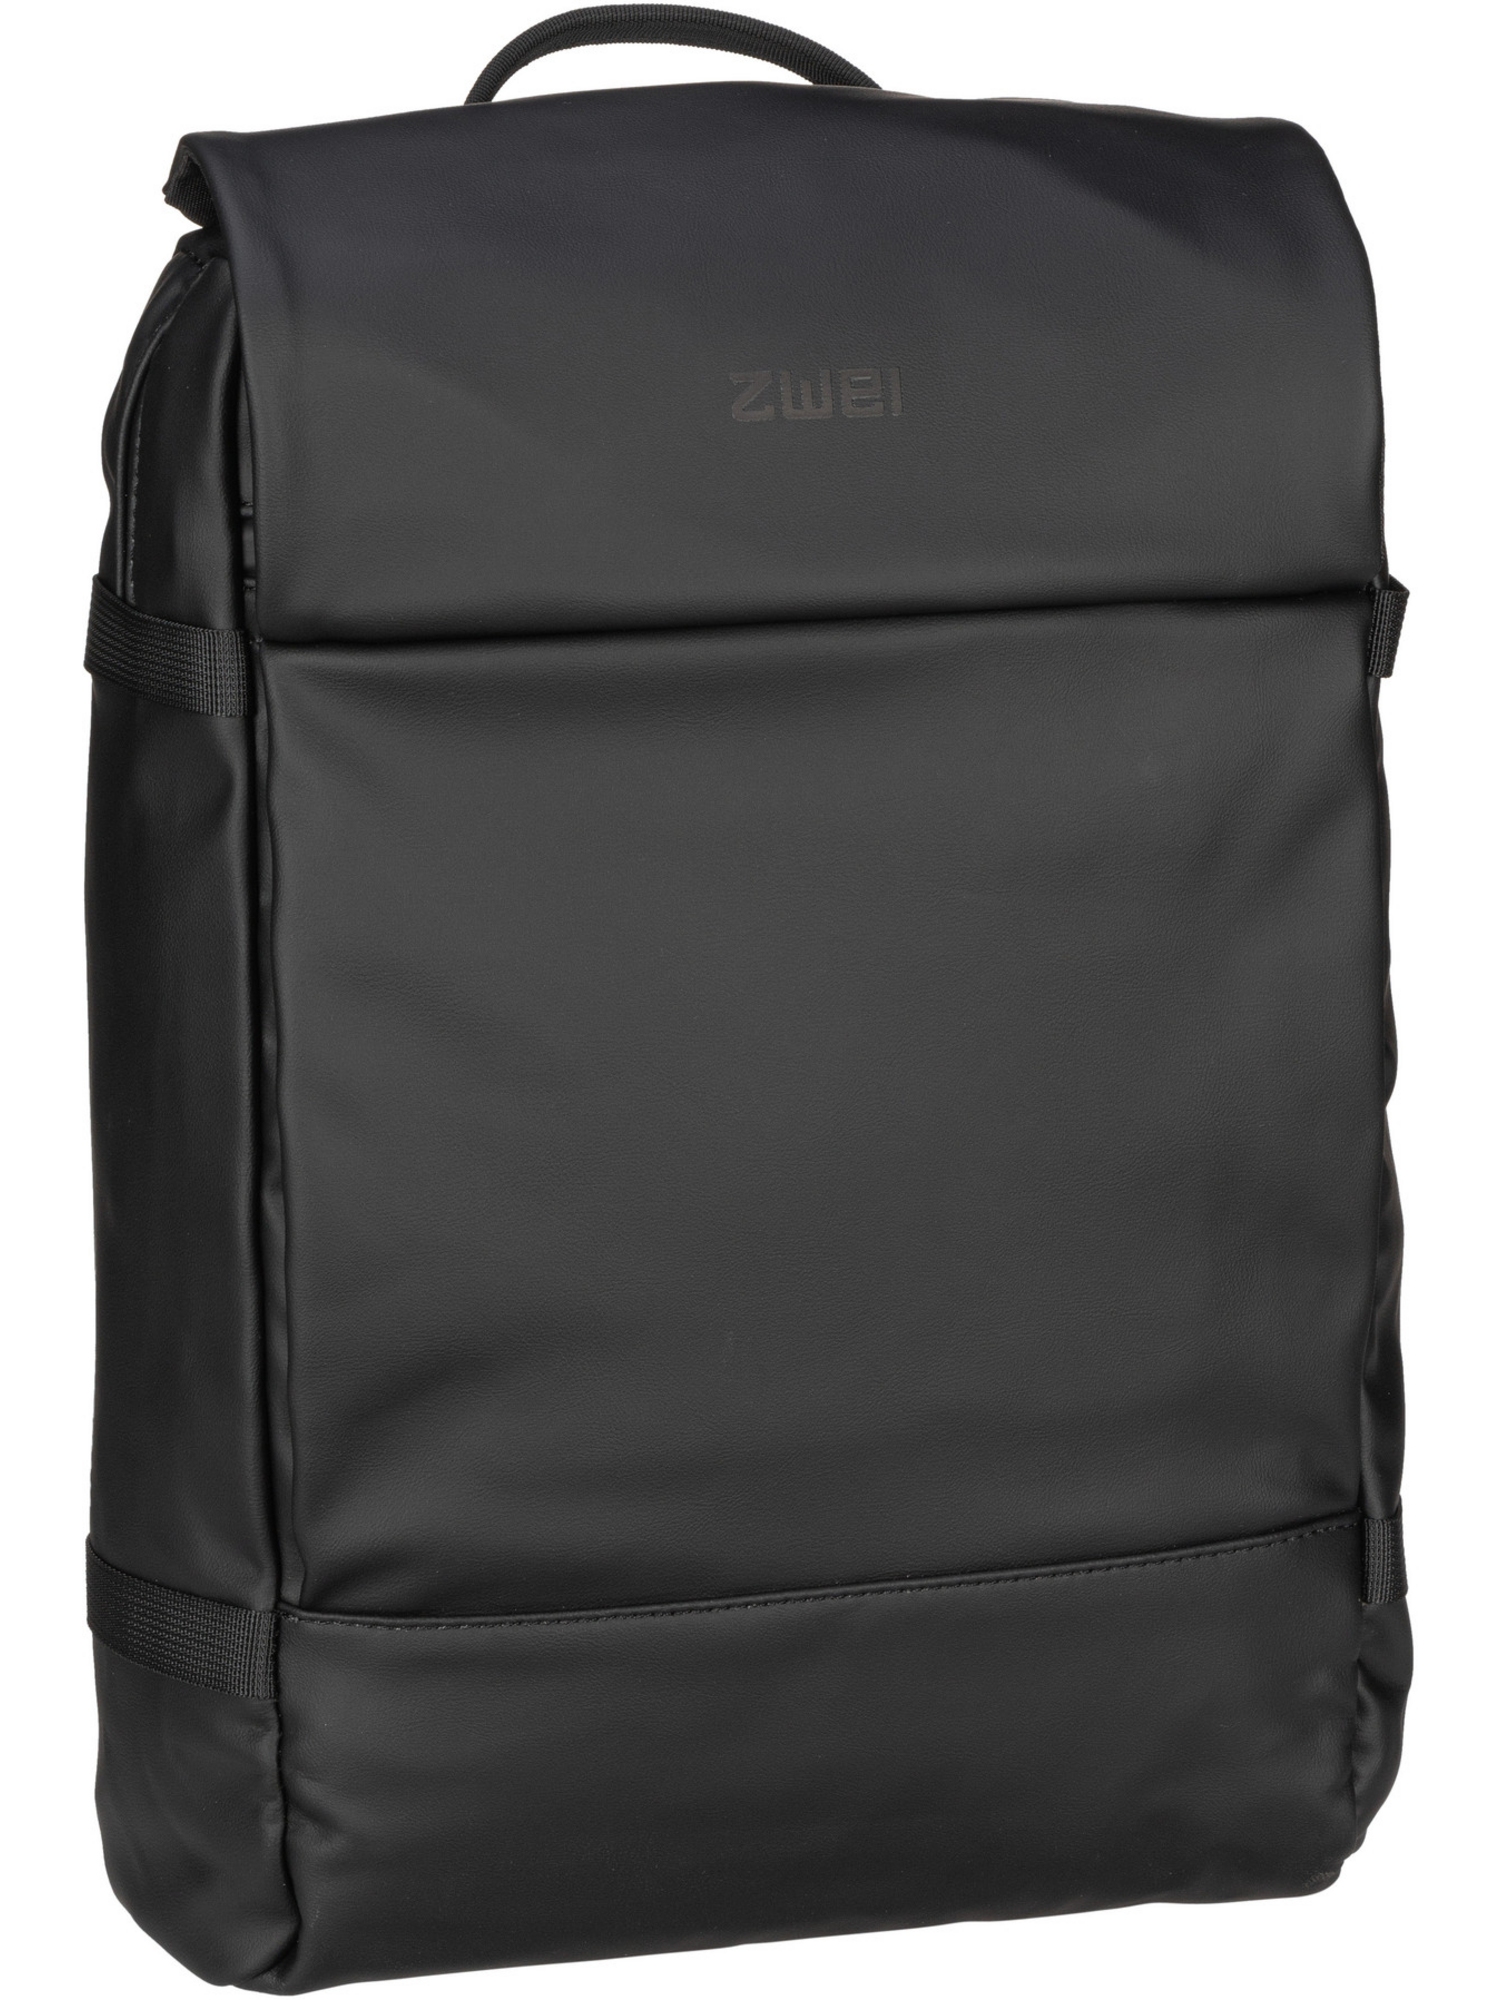 Рюкзак Zwei/Backpack Aqua AQR150, черный